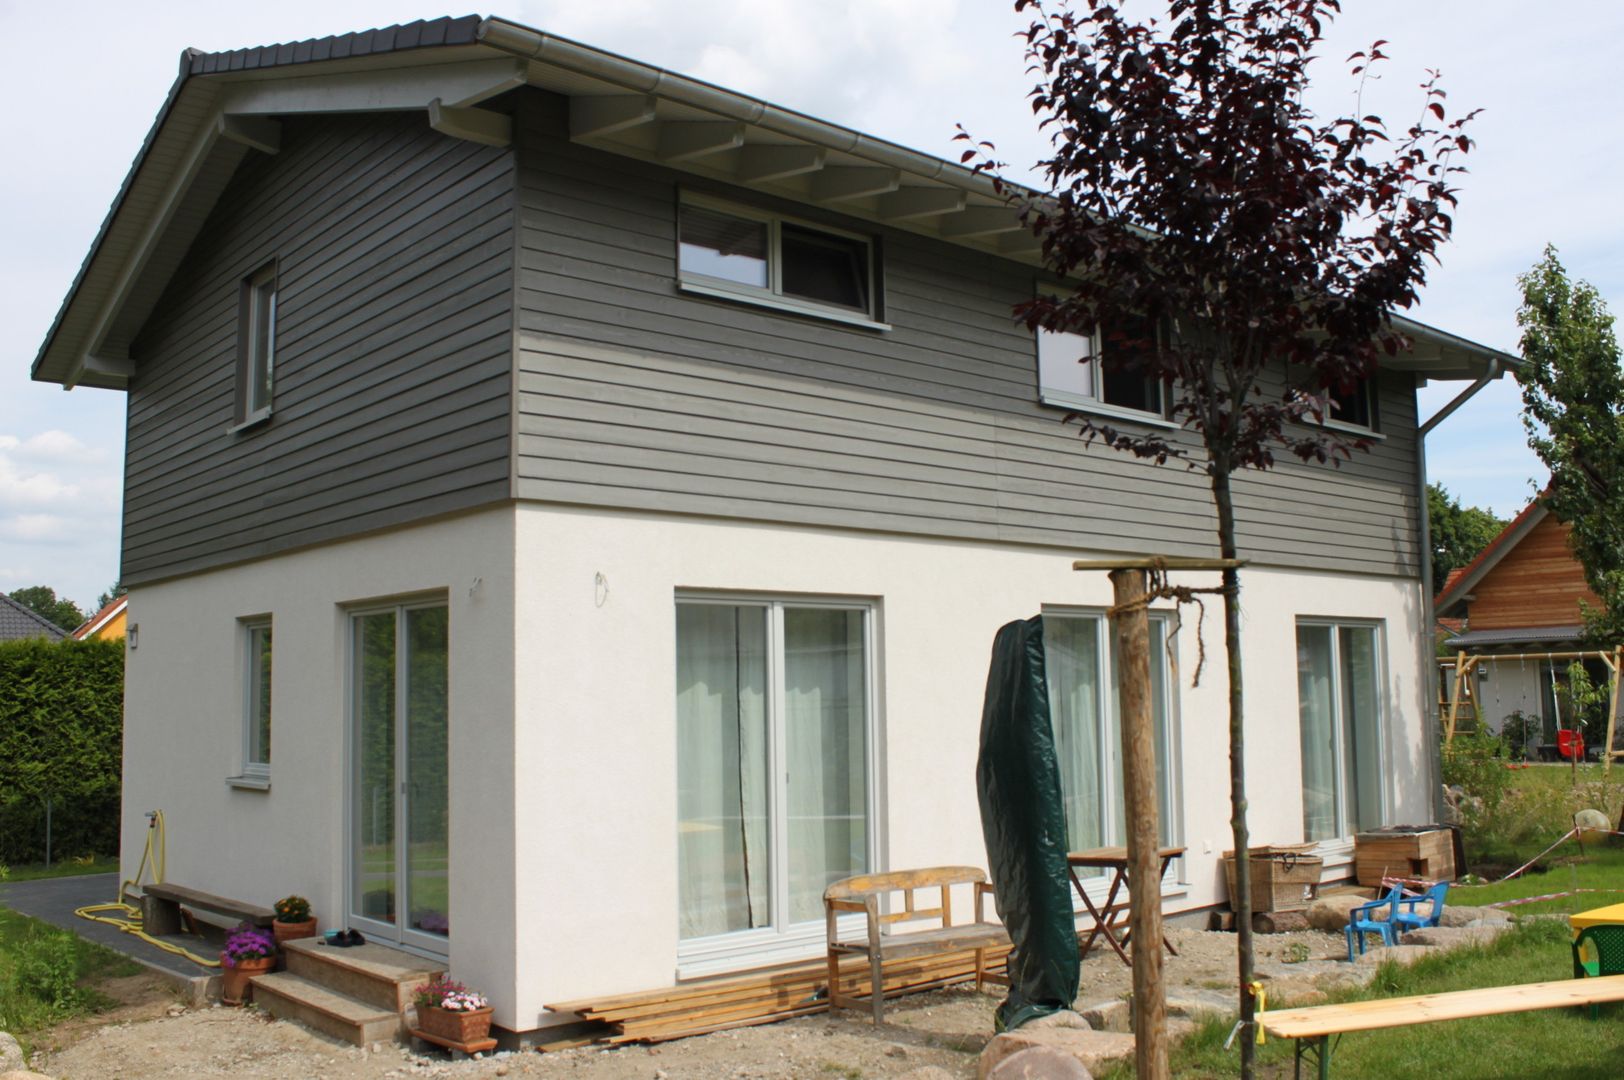 Wohngesundes Holzhaus - modern und kostengünstig, Neues Gesundes Bauen Neues Gesundes Bauen Modern Evler